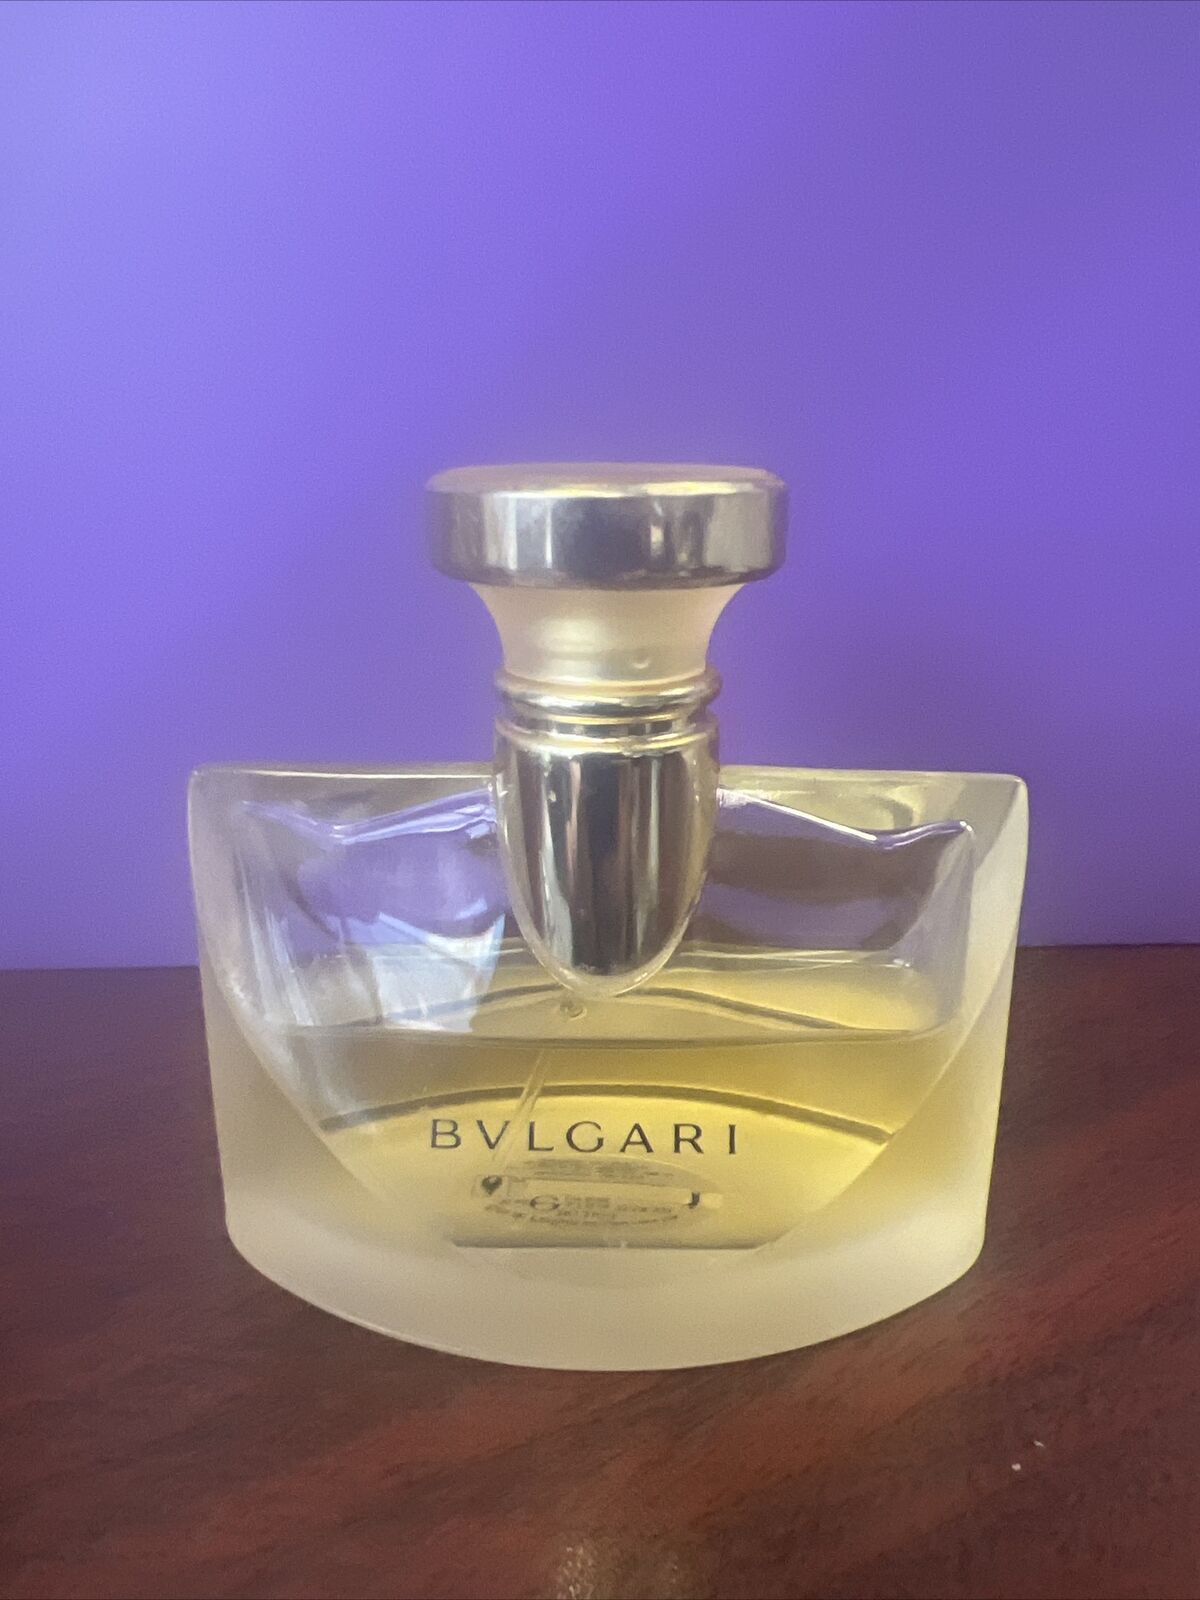 Bvlgari Pour Femme 100 ml 3.4 oz Eau de Parfum Spray Cap Discontinued Vintage 